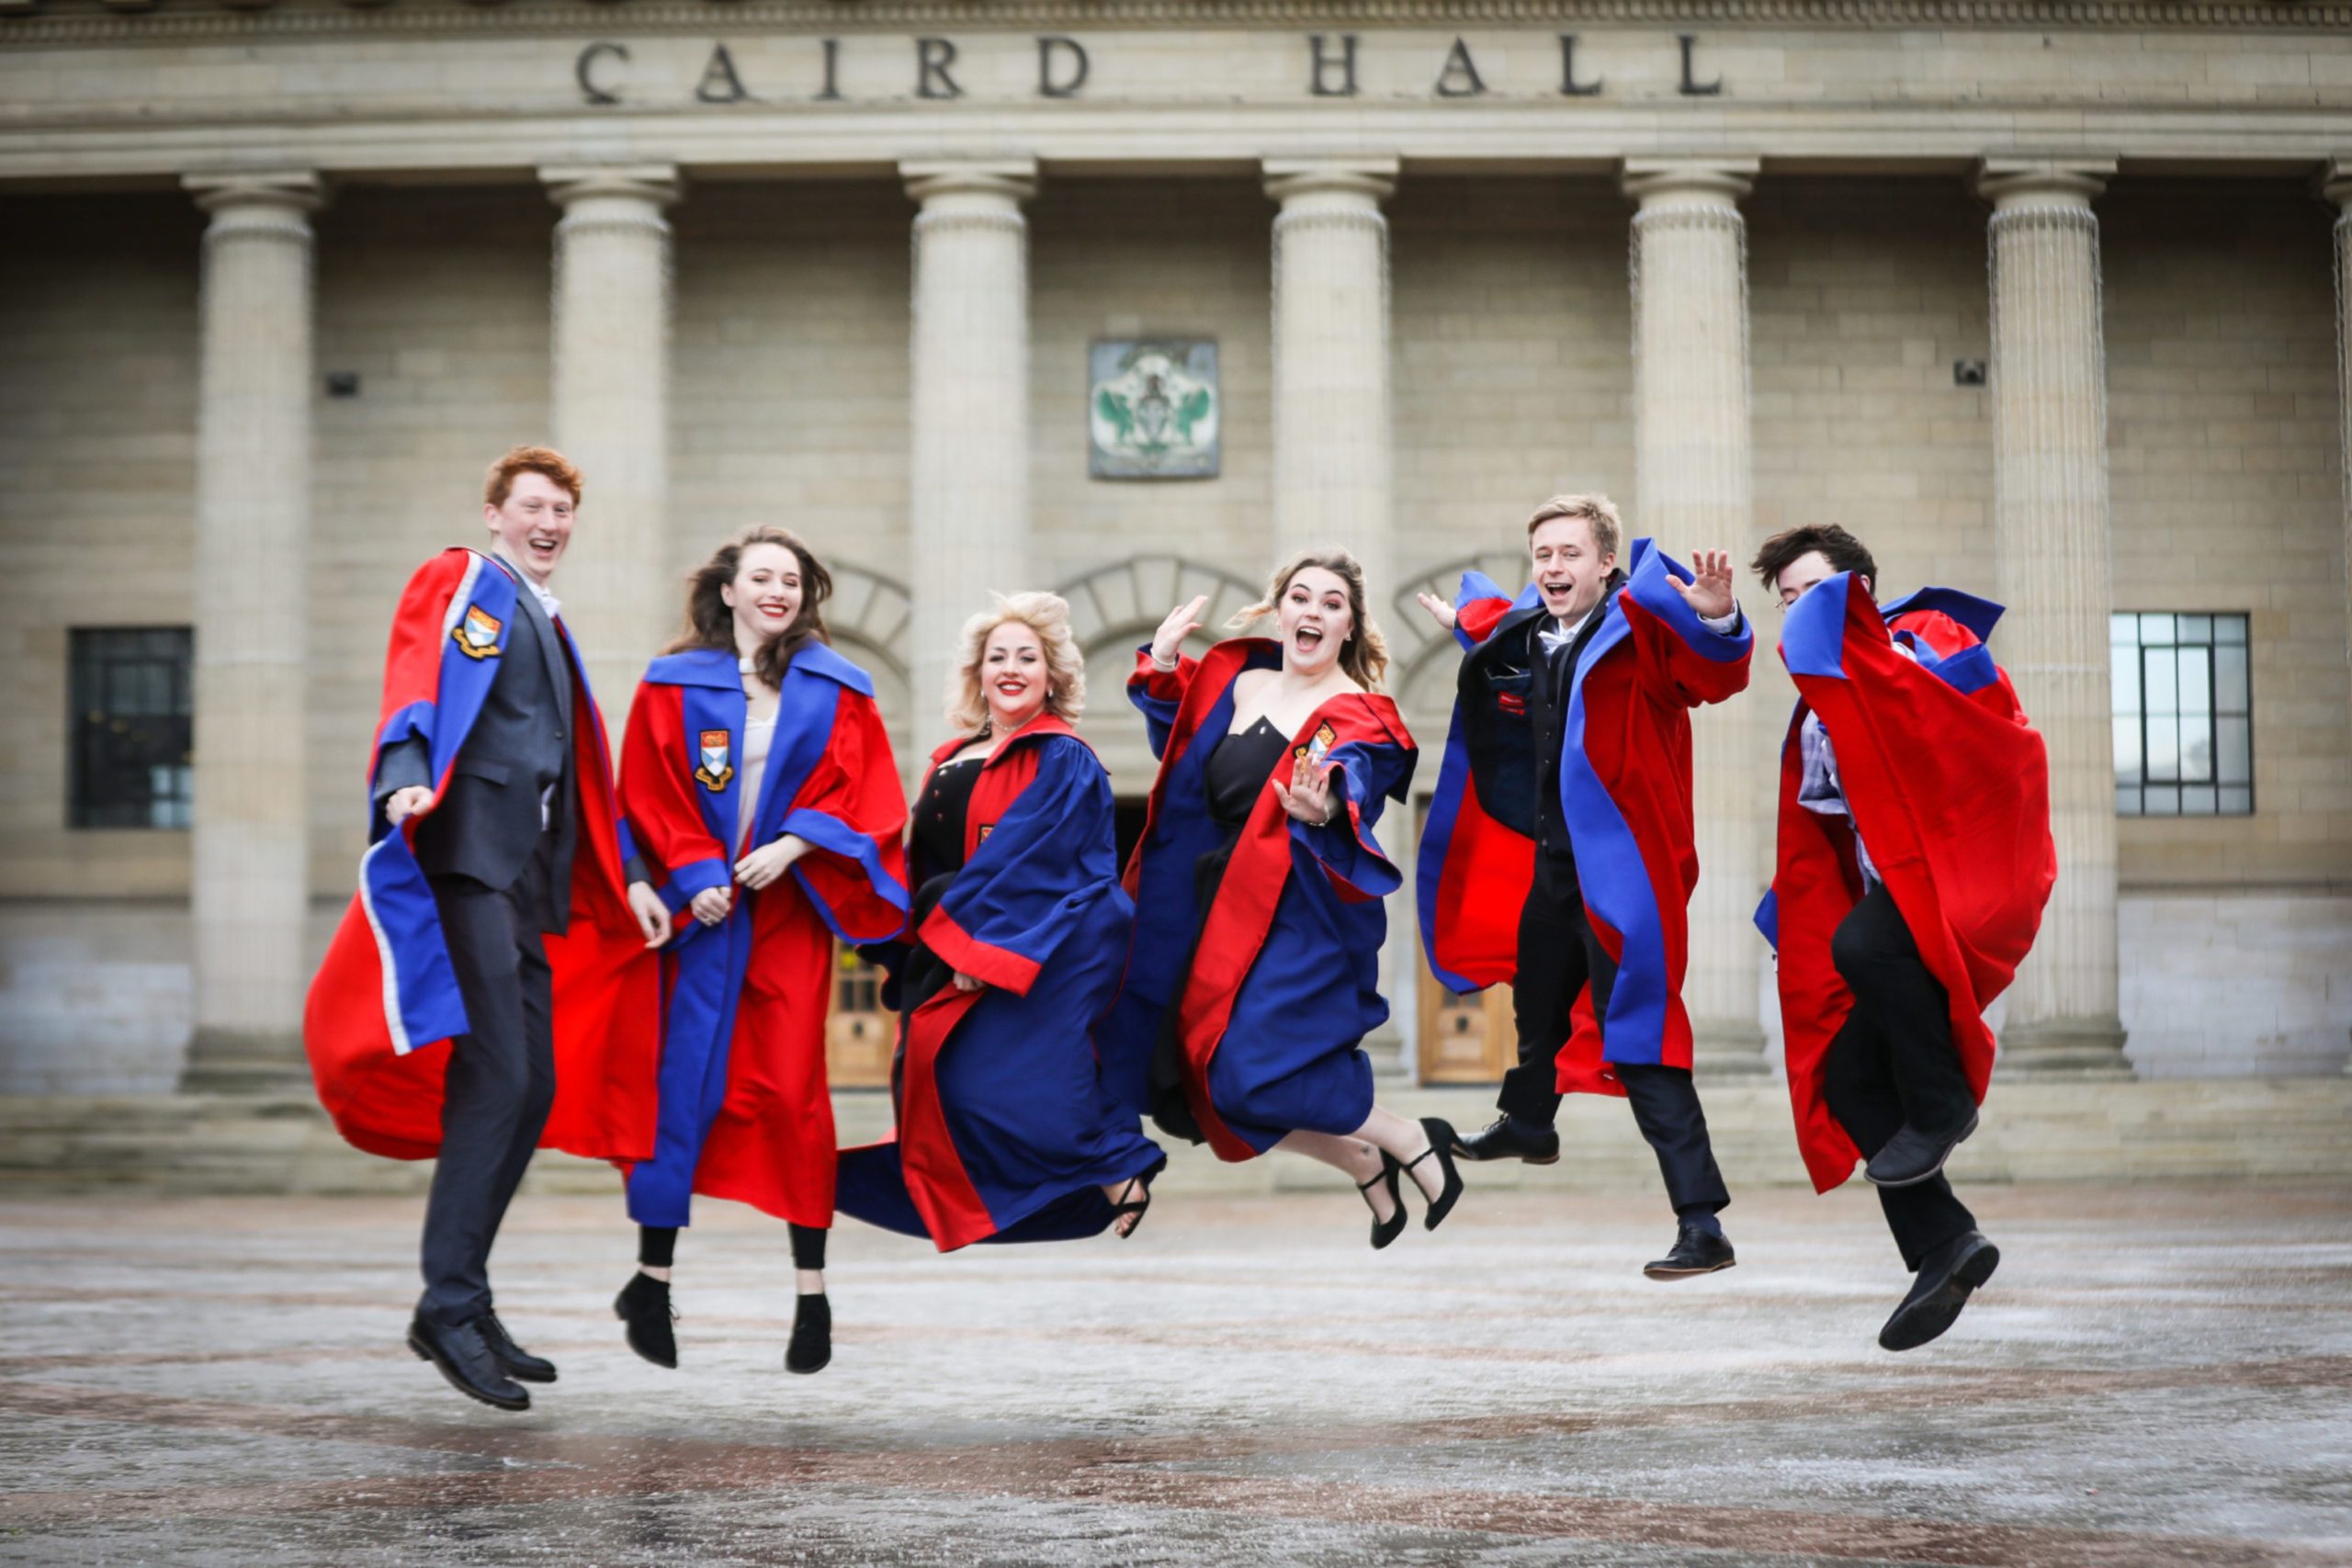 Dundee University graduates celebrated together last year.